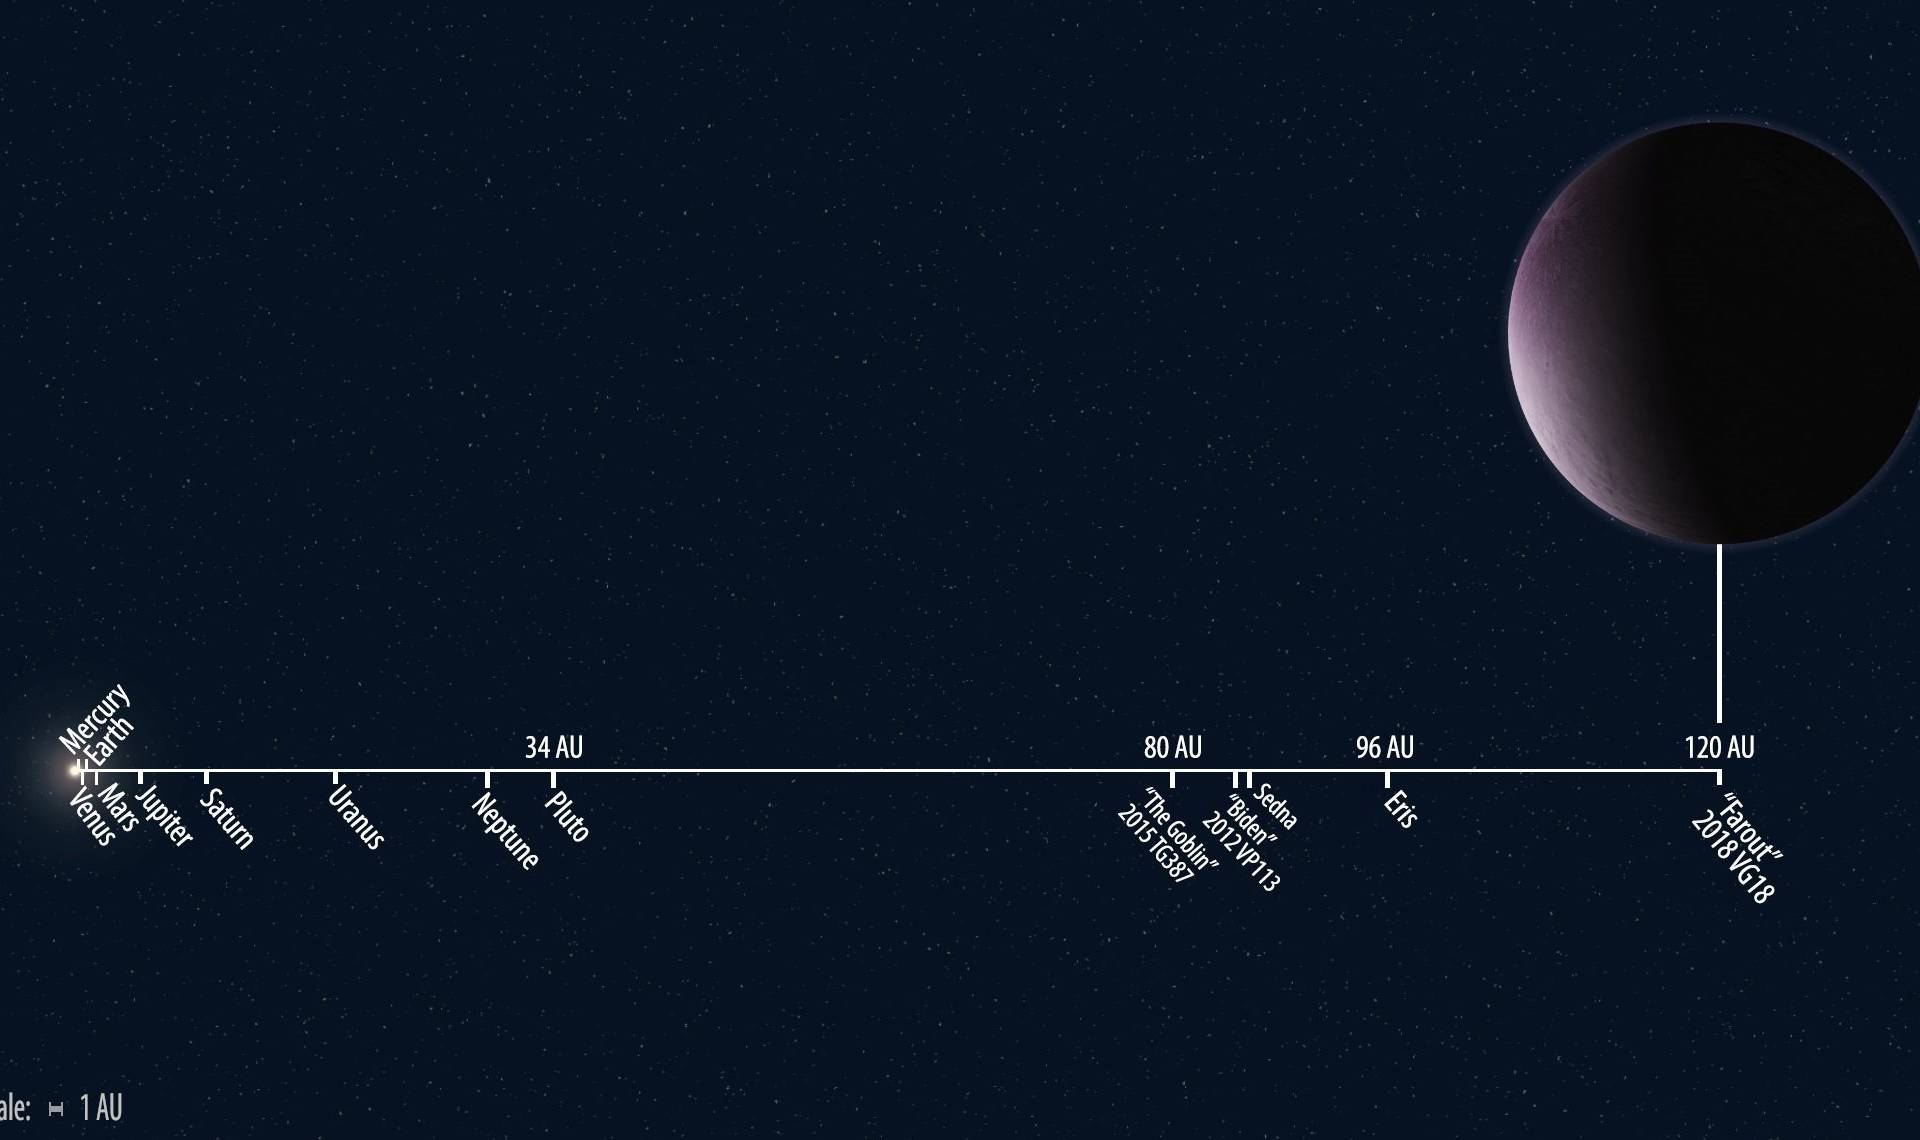 Ružičasti  planet: Za krug oko Sunca treba mu - 1000 godina!